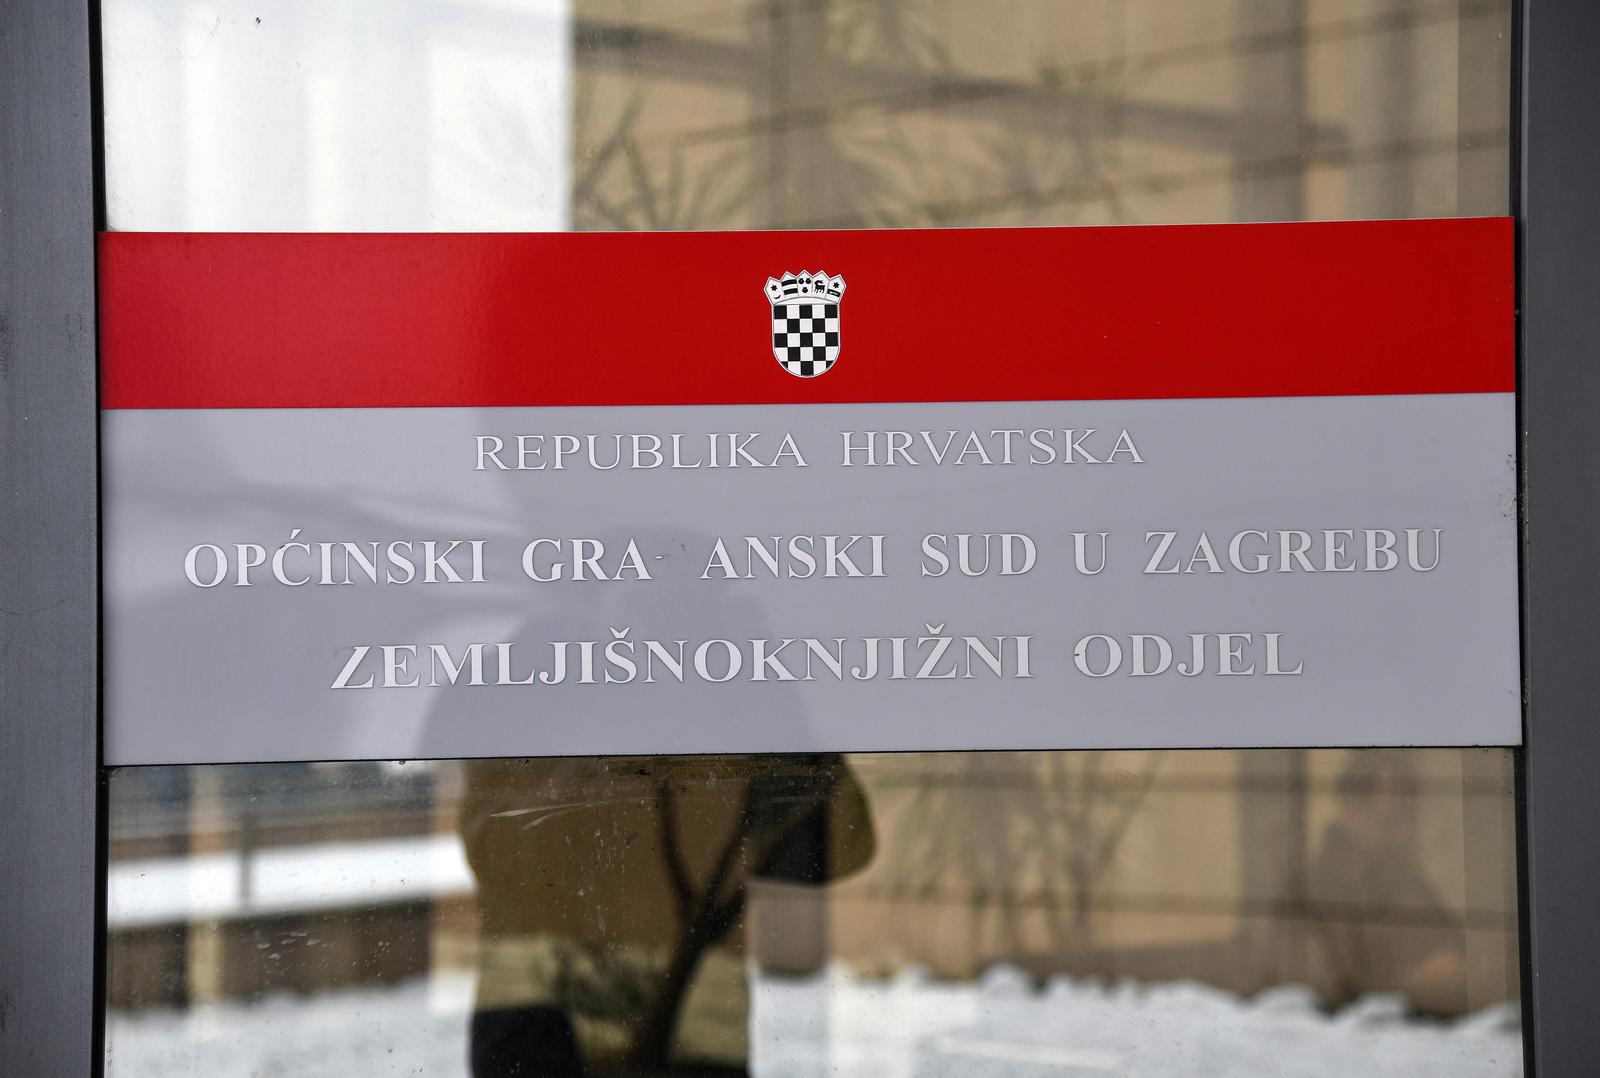 24.01.2019., Zagreb - Zemljisnoknjizni odjel Opcinskog gradjanskog suda u Zagrebu. "nPhoto: Josip Regovic/PIXSELL